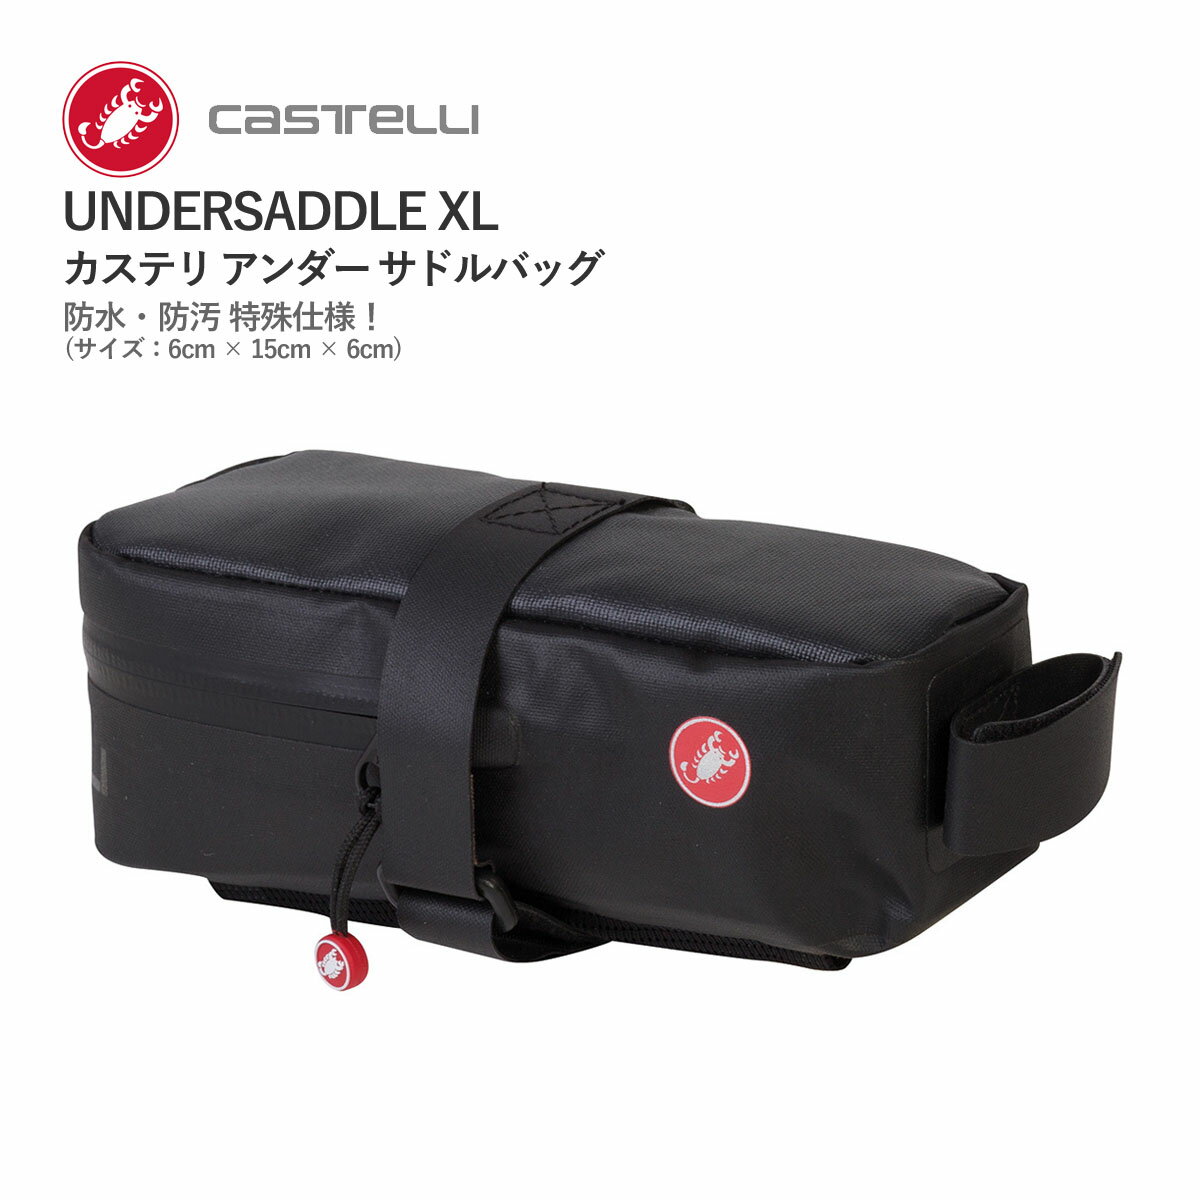 【即納】CASTELLI 105 UNDERSADDLE XL カステリ アンダー サドルバッグ 普通郵便(土日祝除く)